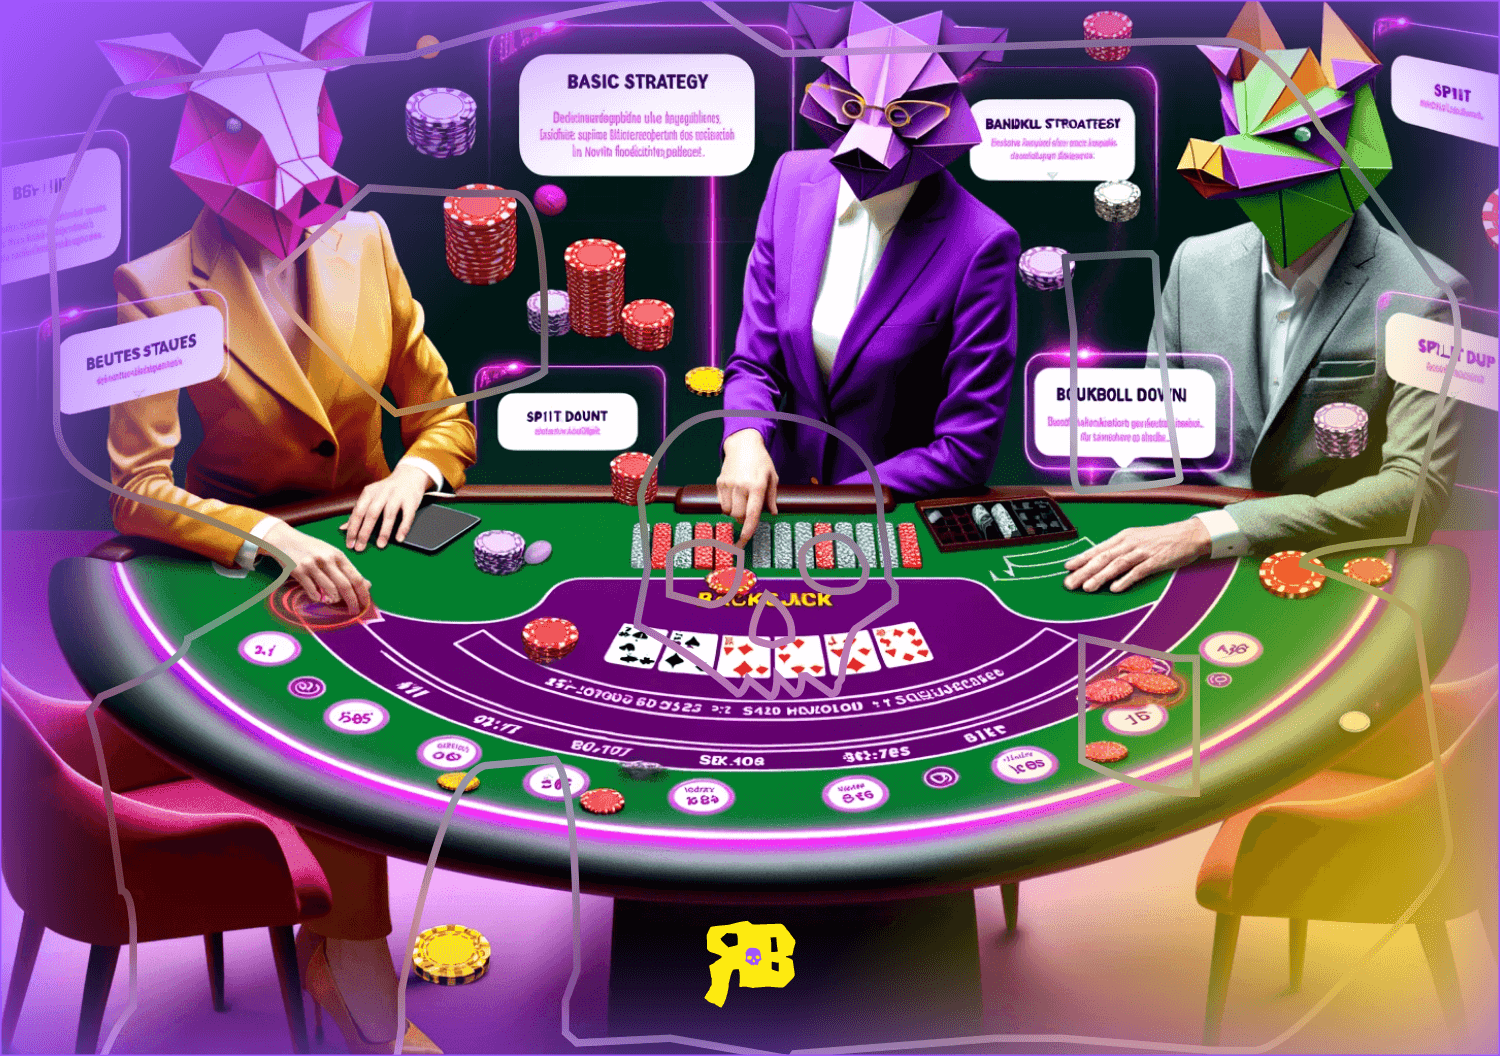 die-besten-strategien-fur-blackjack-im-online-casino-reichlich-bonusse